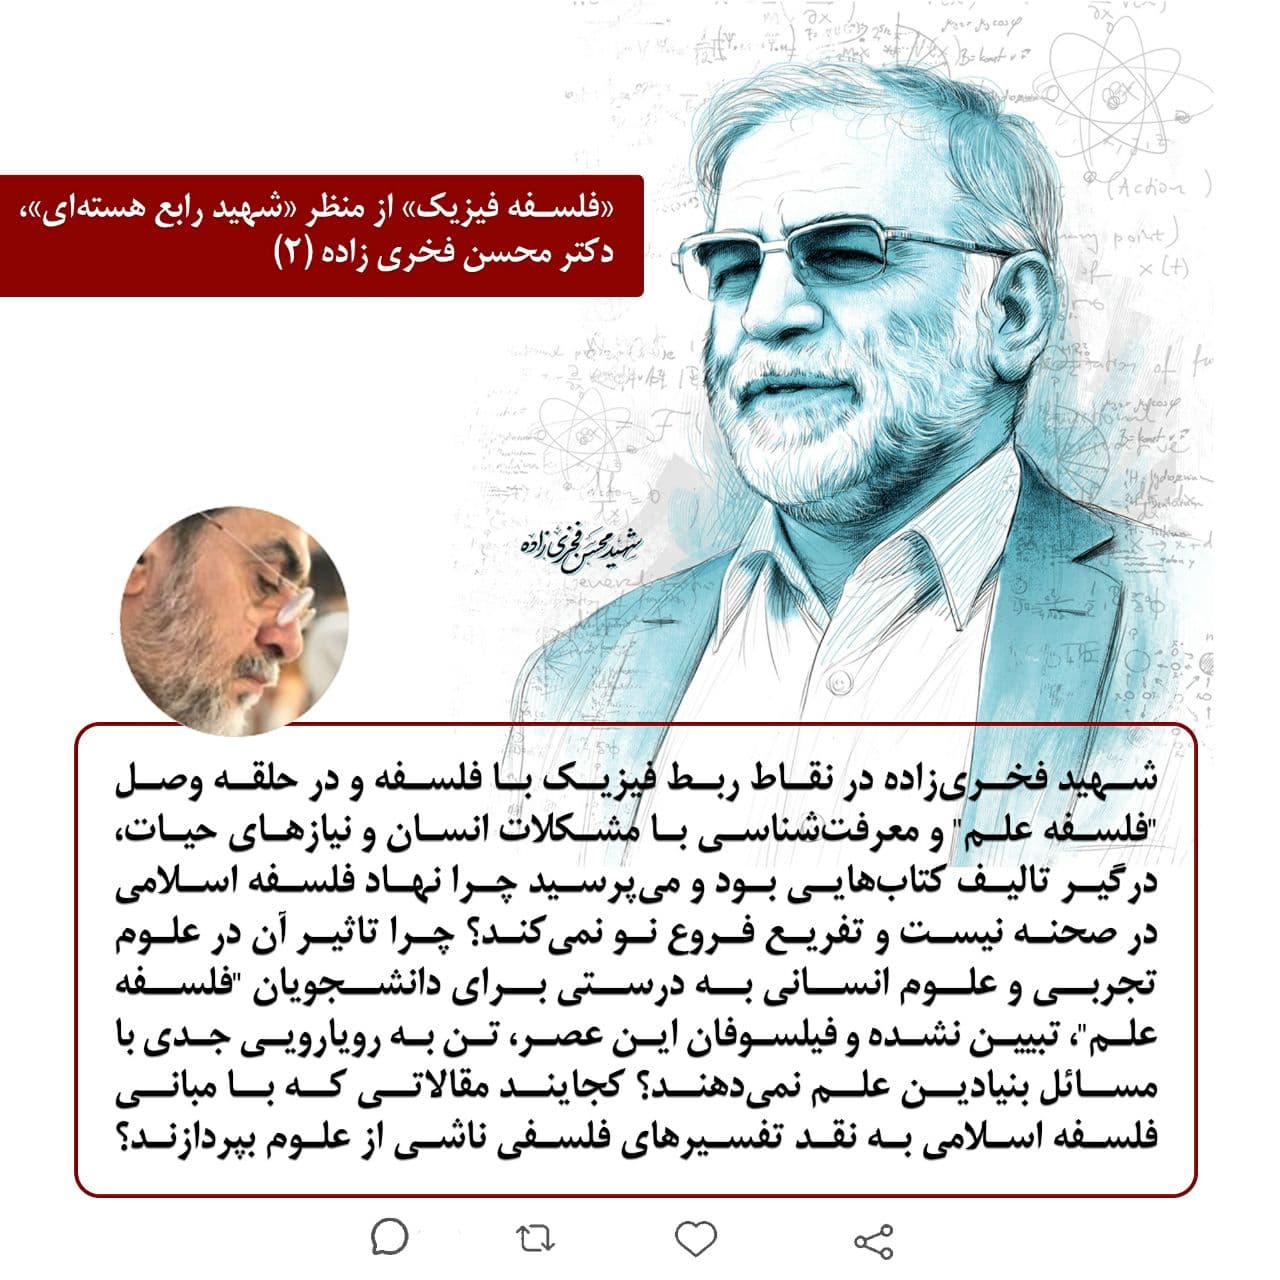 «فلسفه فیزیک» از منظر «شهید رابع هسته ای»، دکتر محسن فخری زاده